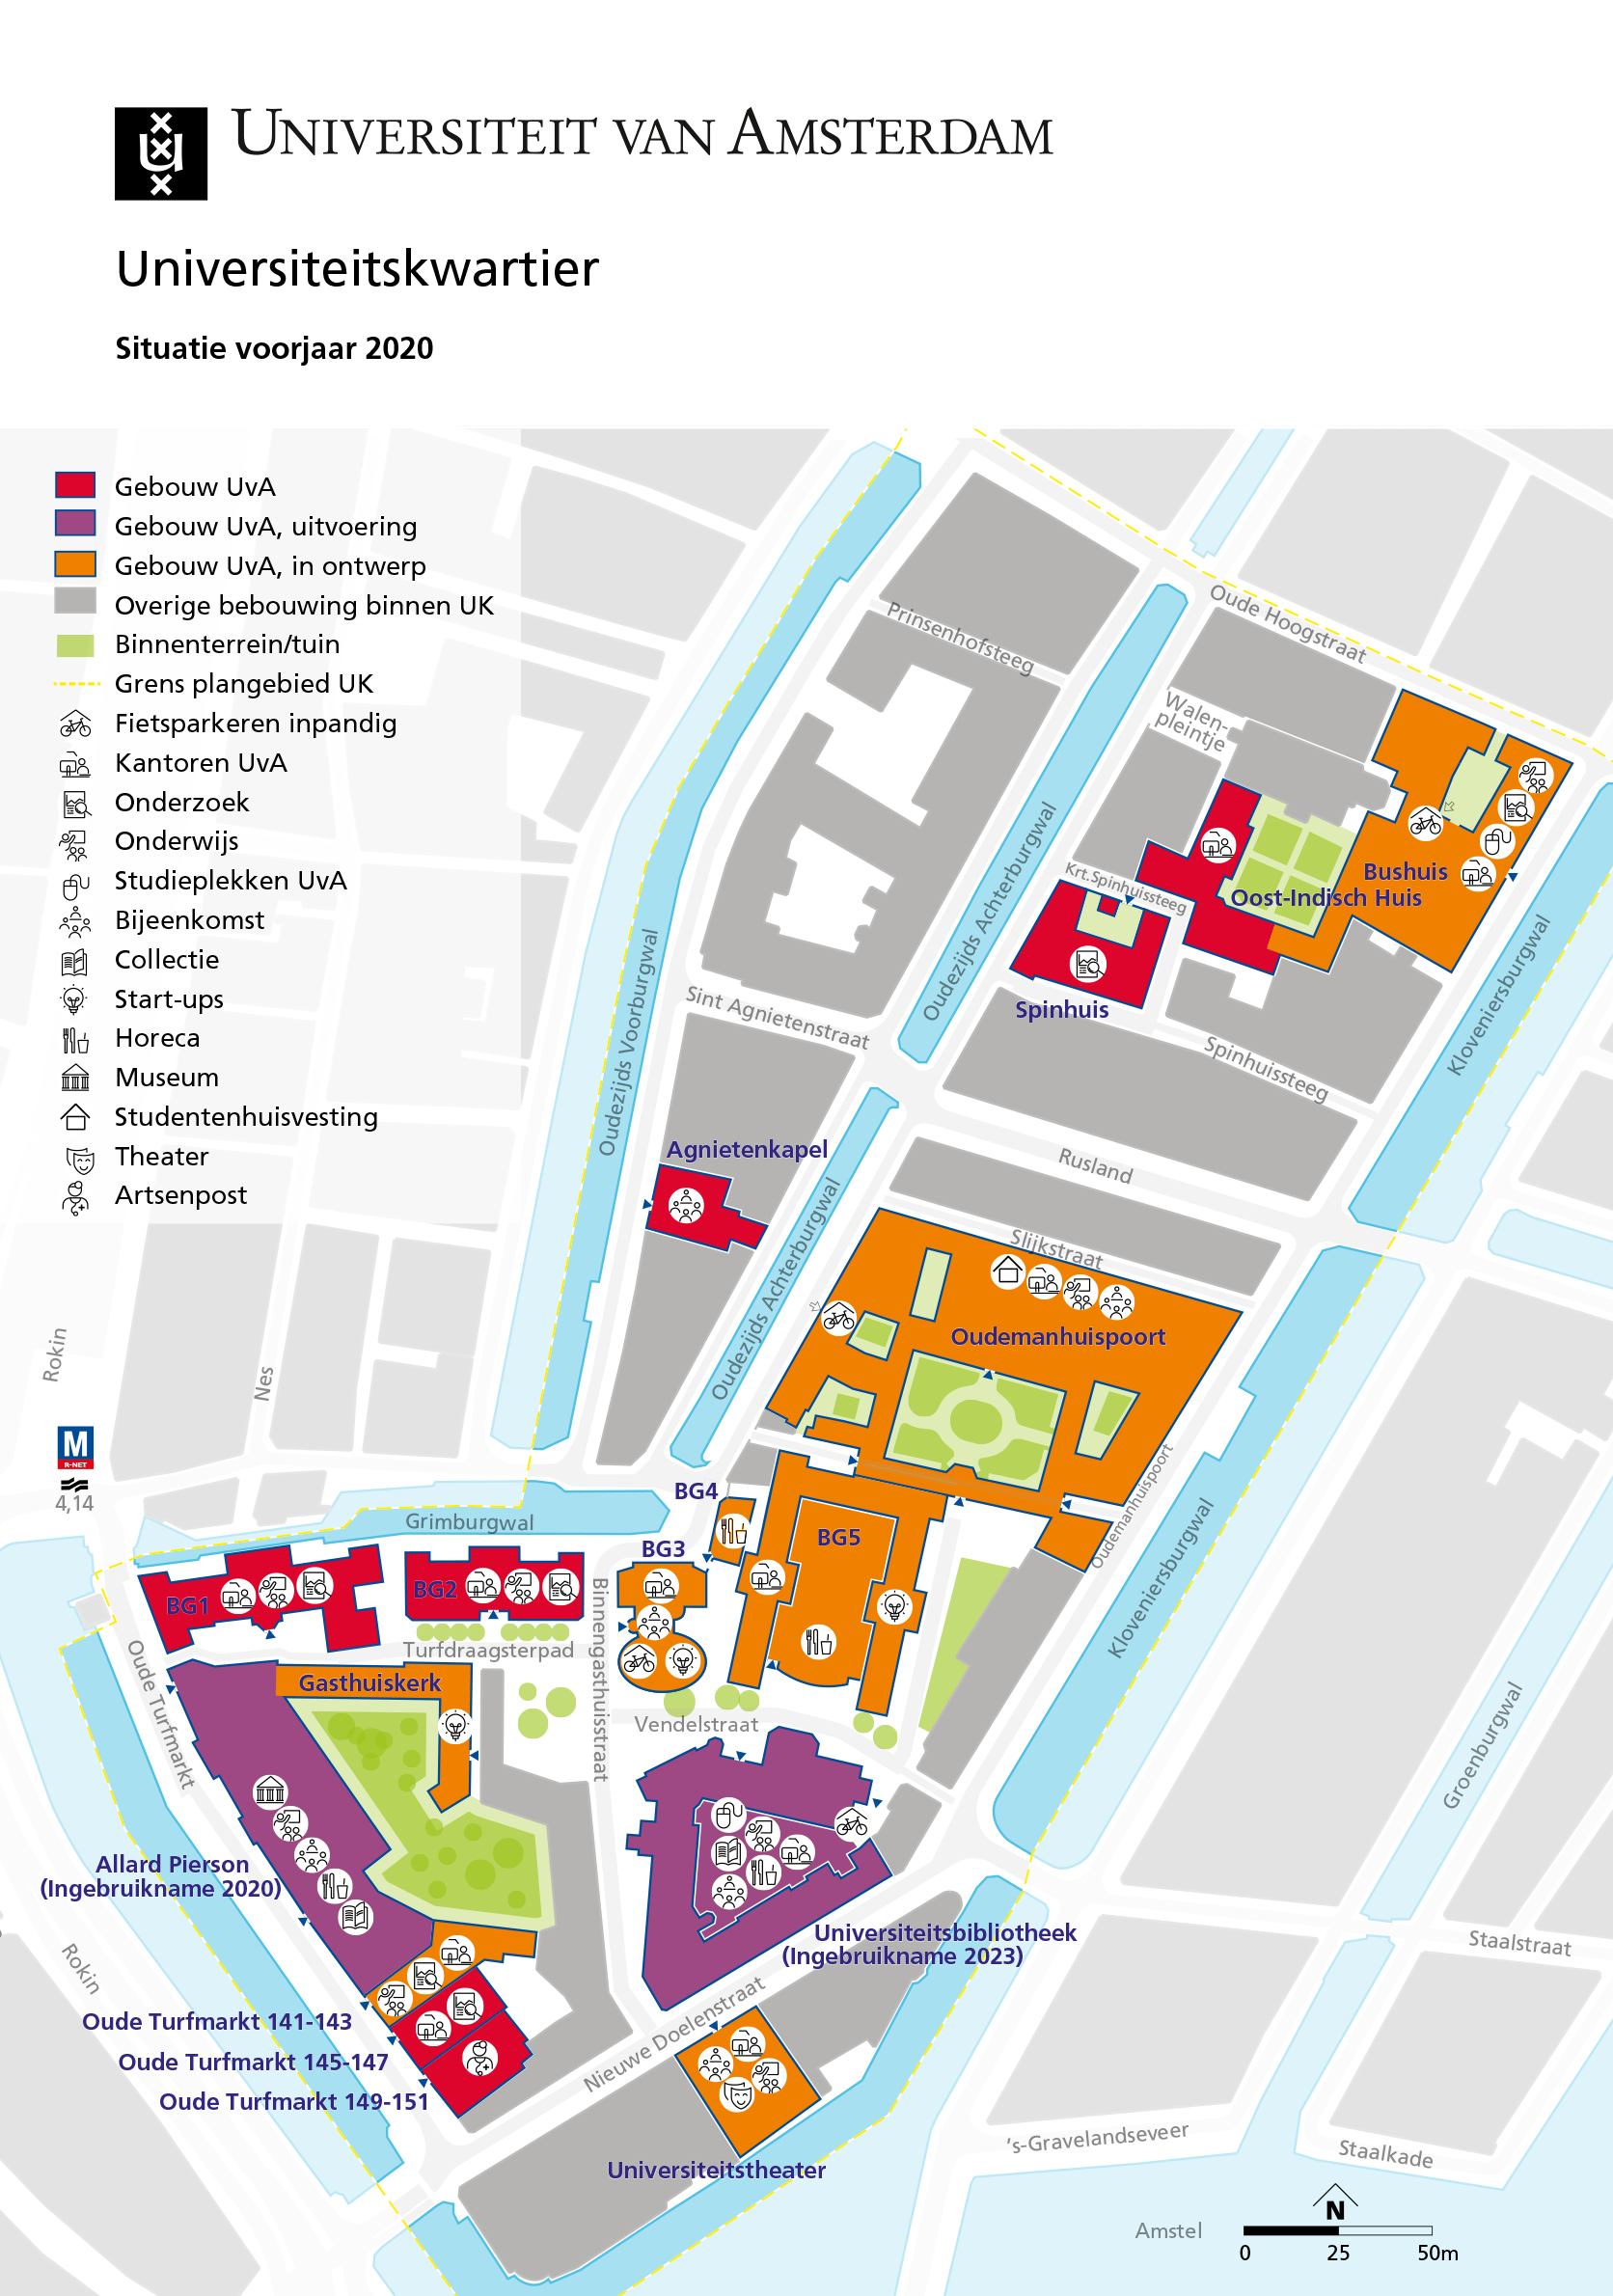 plattegrond Universiteitskwartier Amsterdam 2020